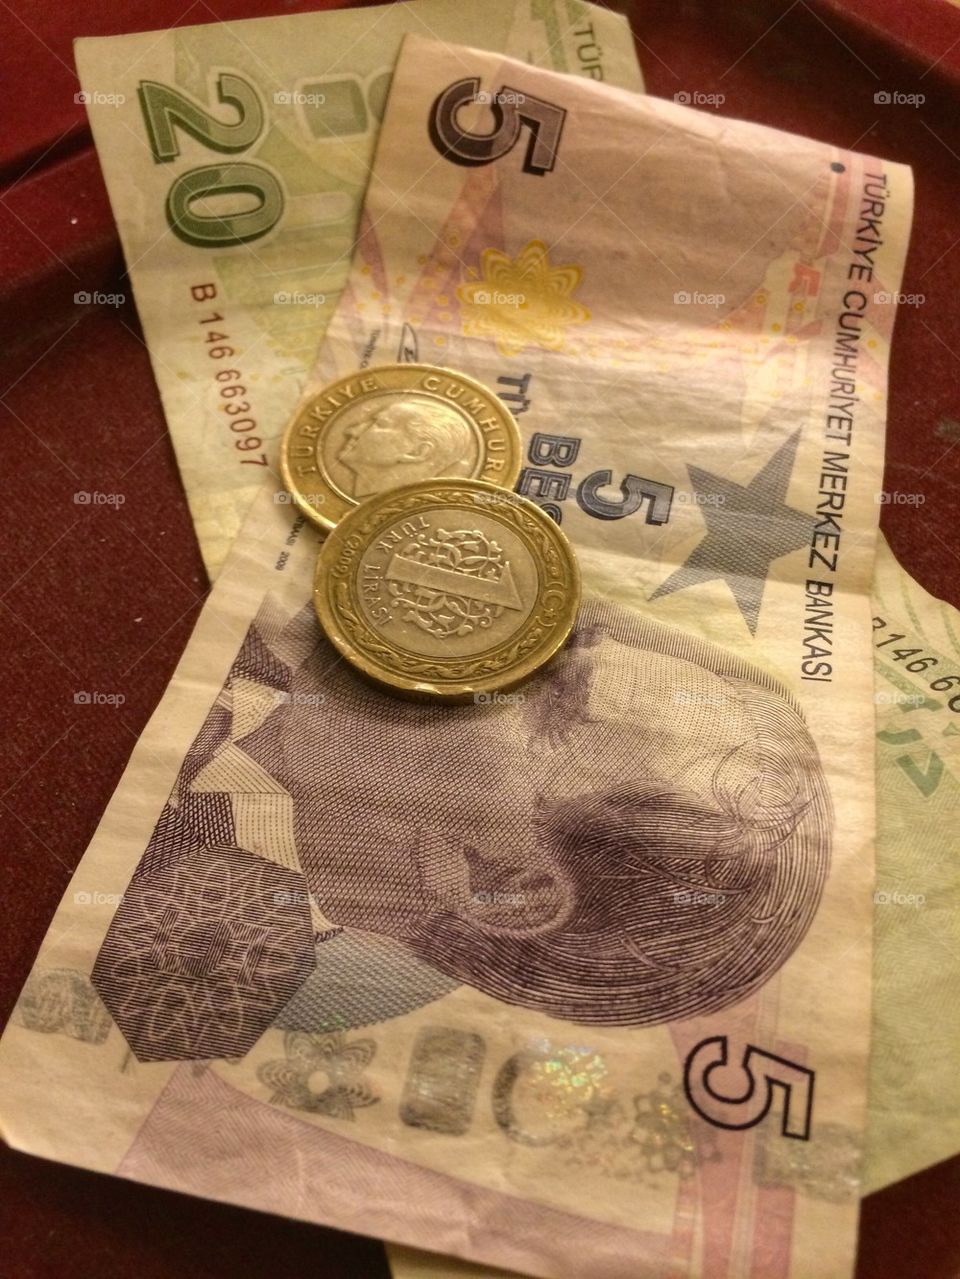 Turhish money on a bar table